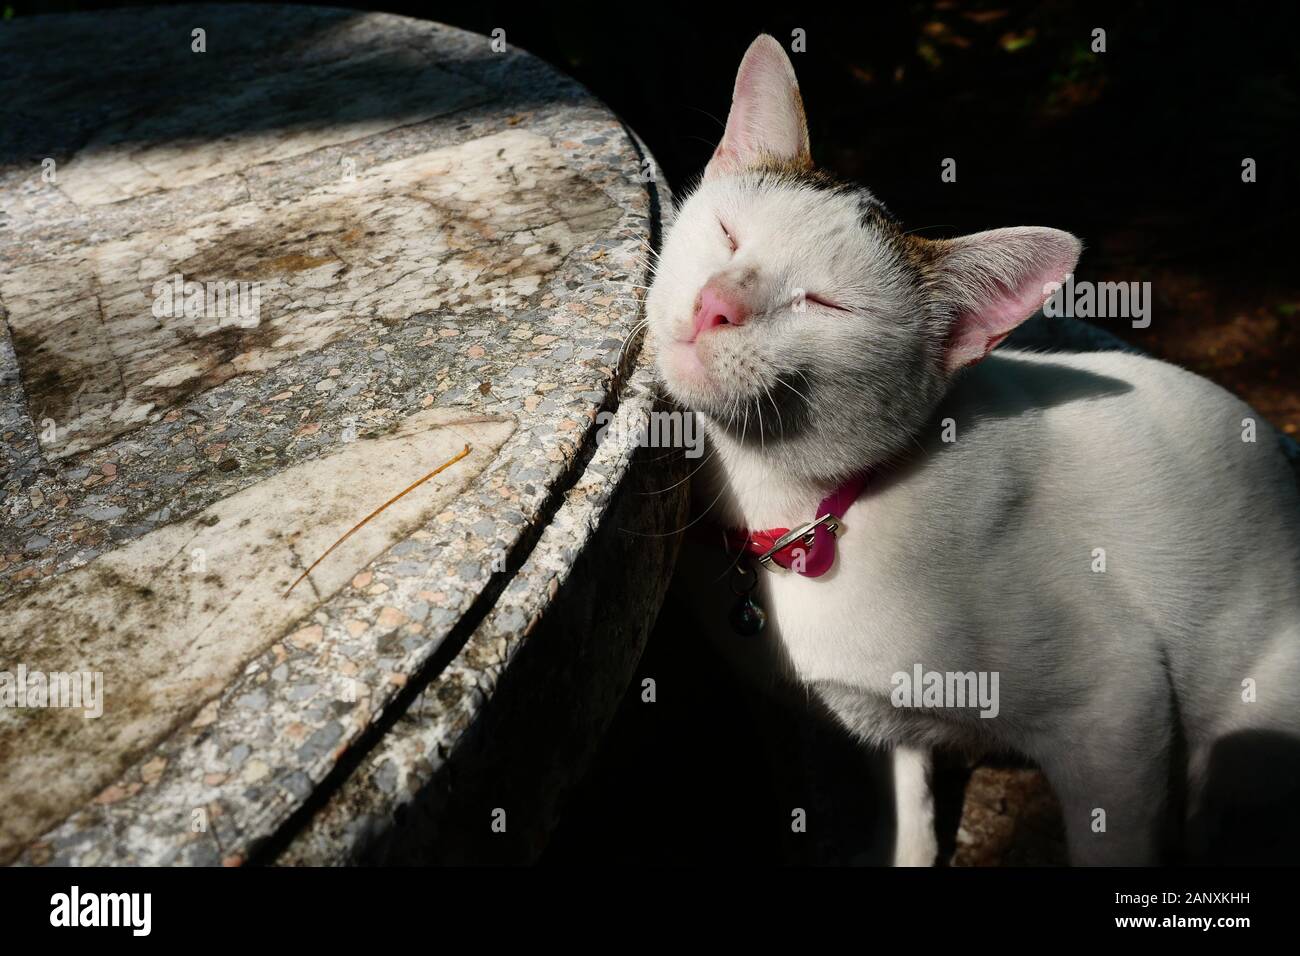 Blanc et gris, les cheveux courts chat frotte sa joue contre une table en béton, les yeux du chat fermé avec un col rouge sur fond de couleur noire Banque D'Images